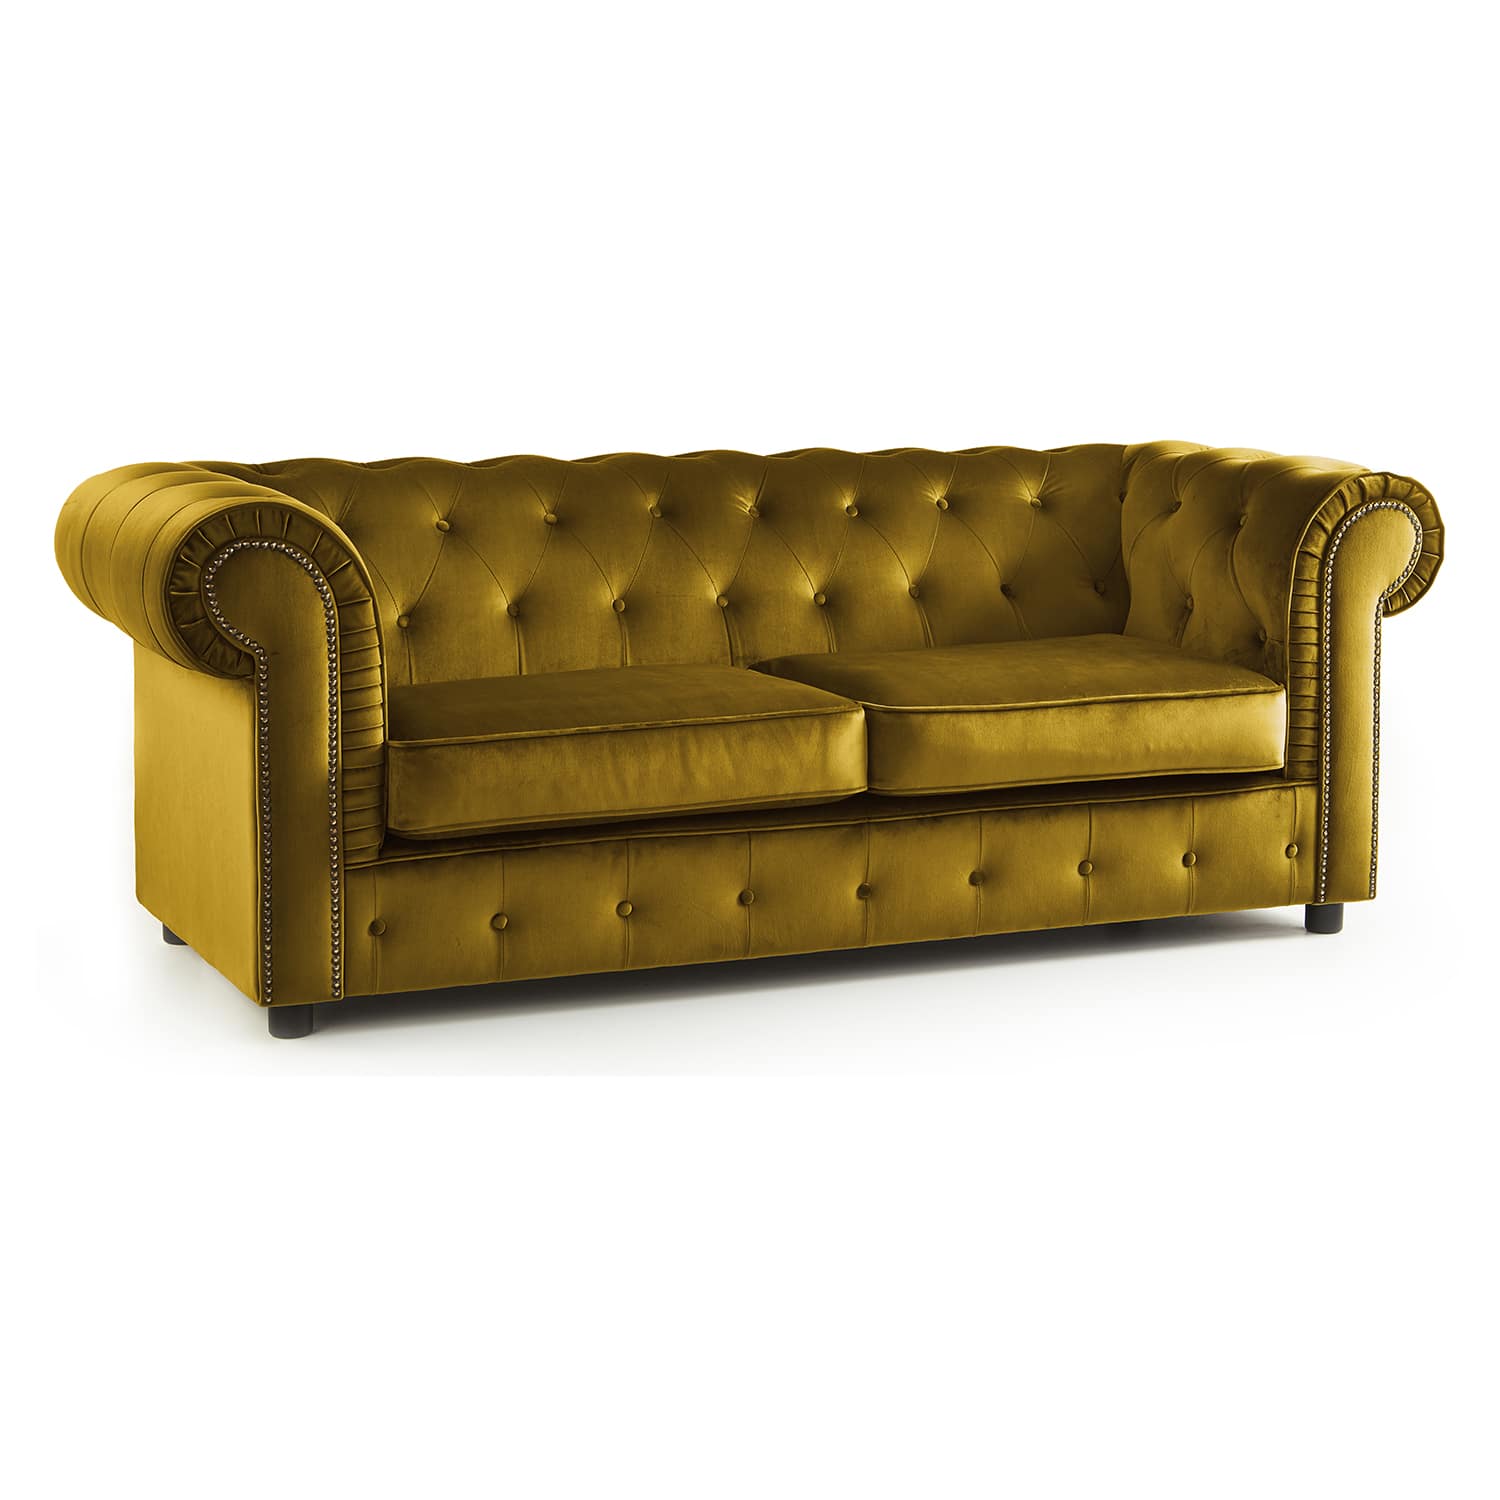 The Ashcroft Soft Velvet Chesterfield 2 Seater Sofa - Mustard